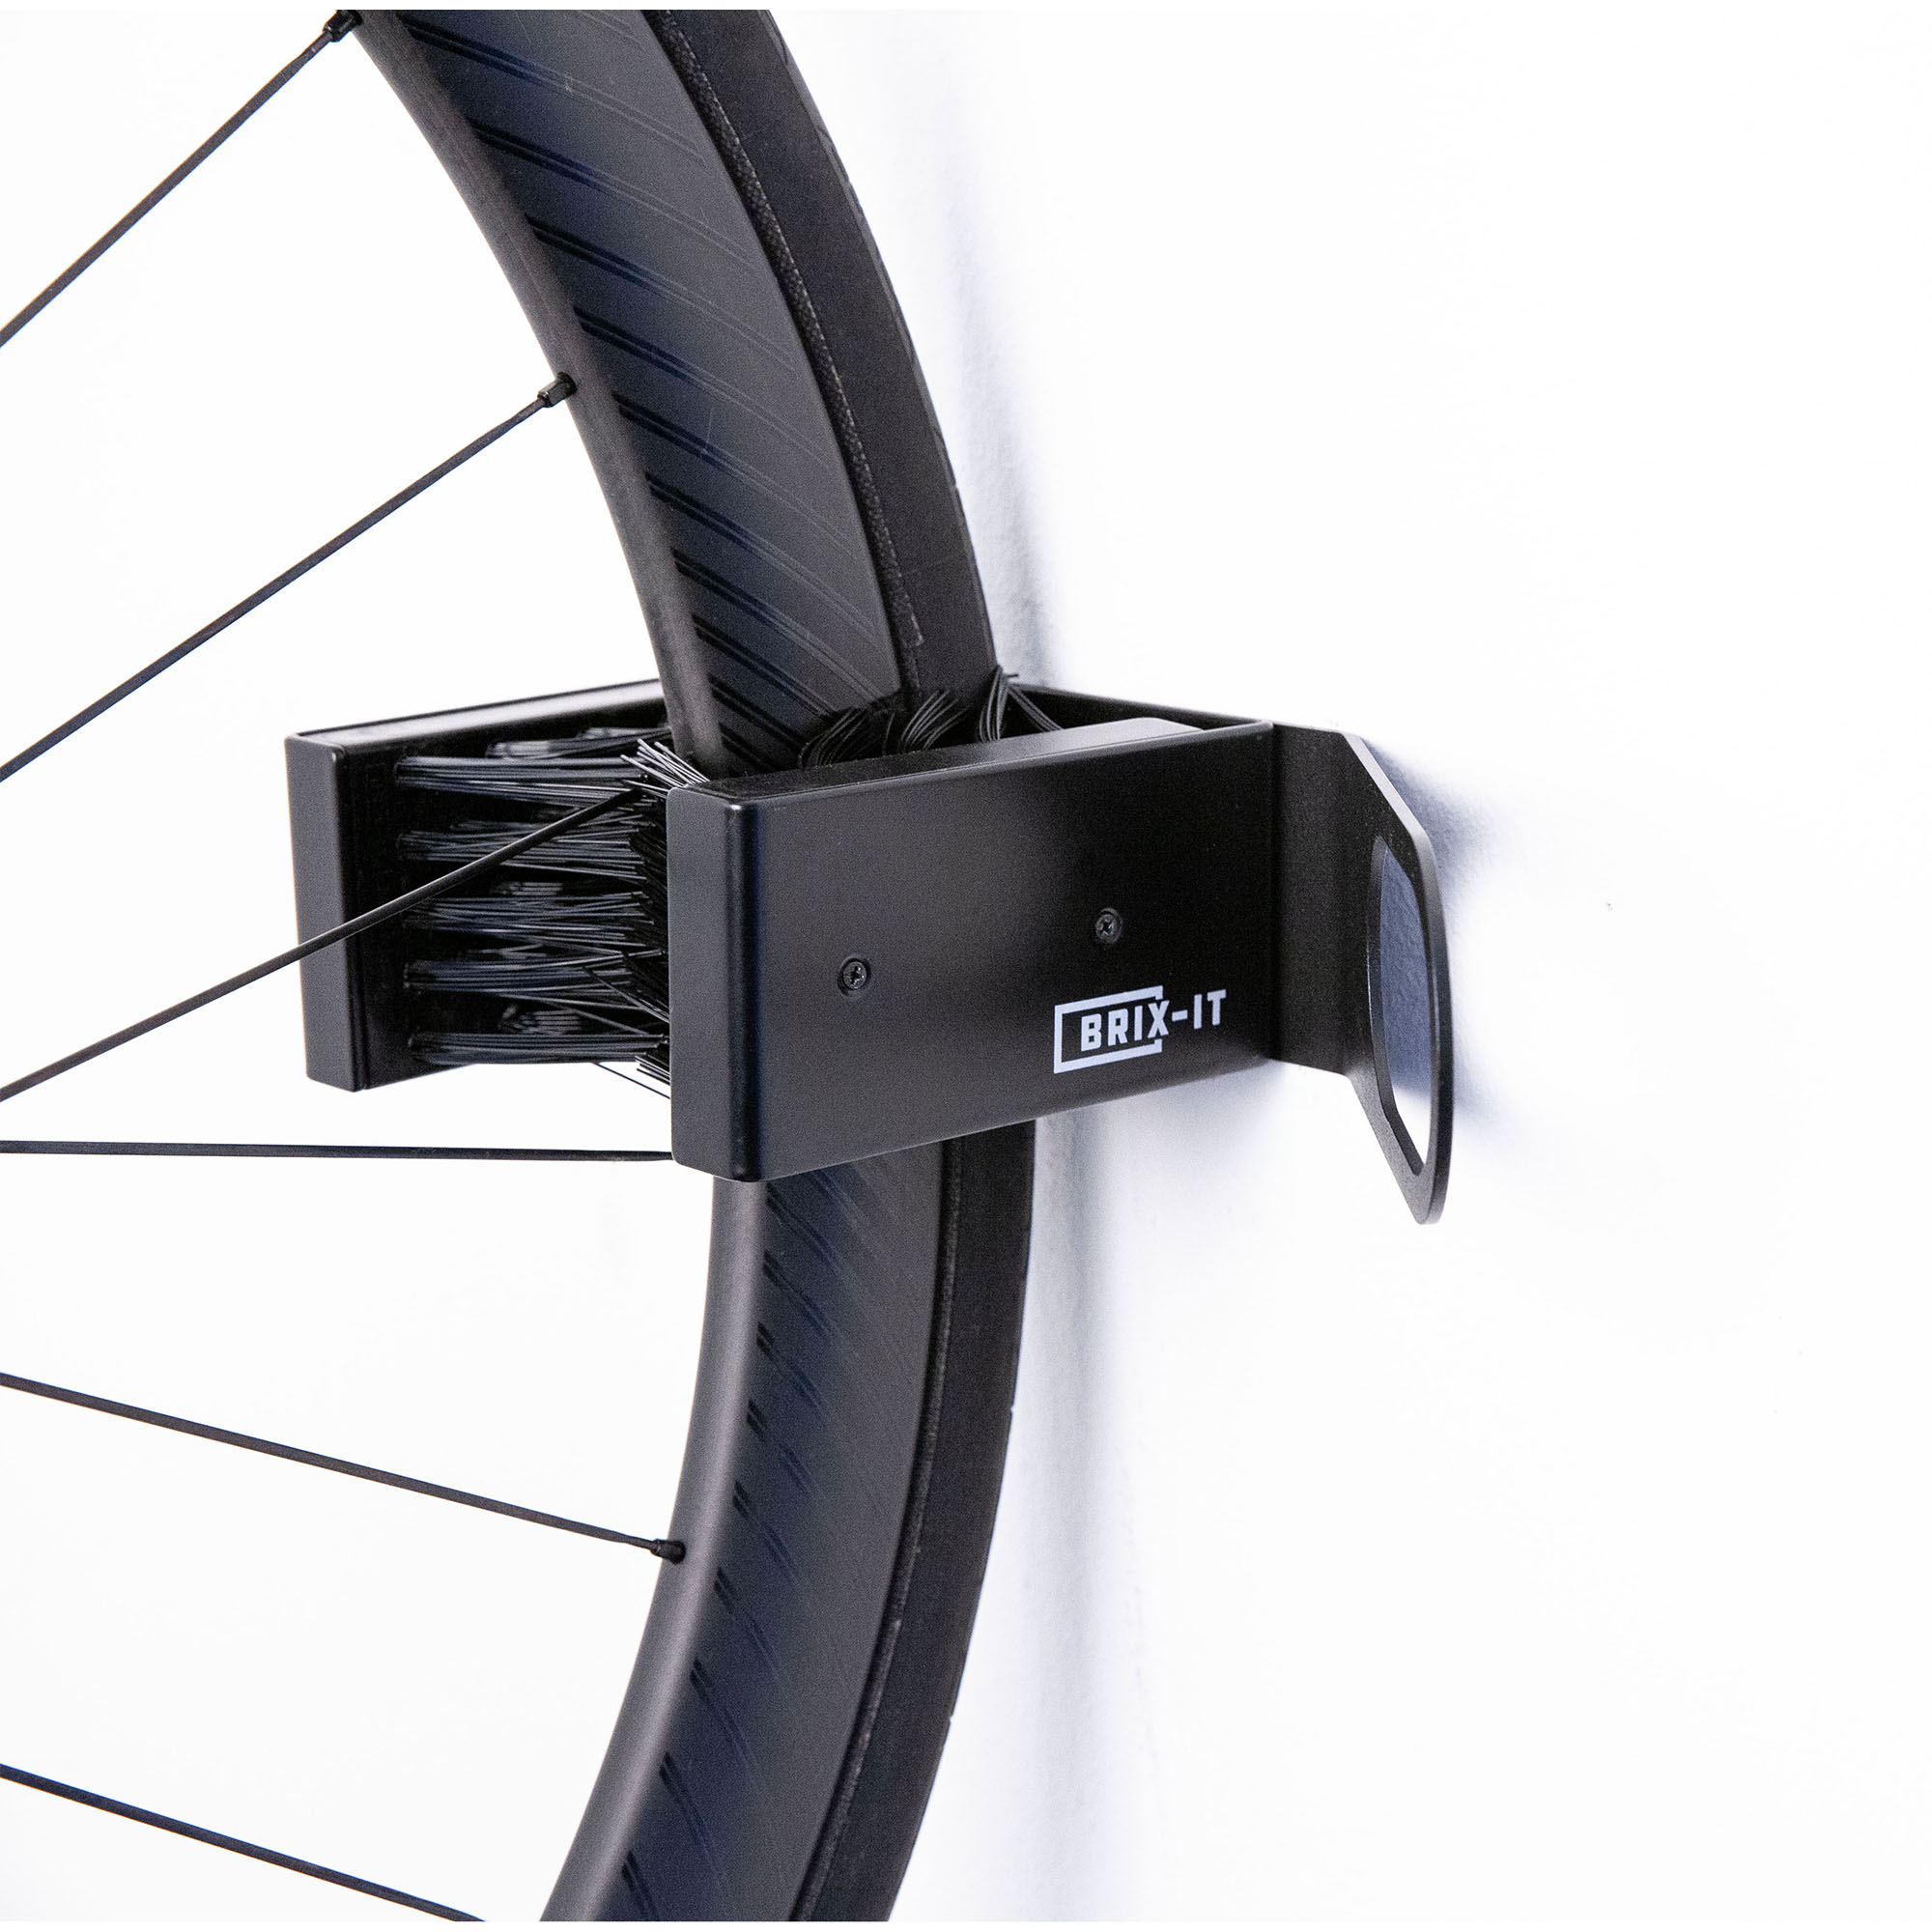 Paket] Brix-IT Set mit Fahrradschloss und Fahrradhalterung für E Bike oder Fahrrad  Halterung mit Kabelschloss Brix IT Brix-LOG und FIX